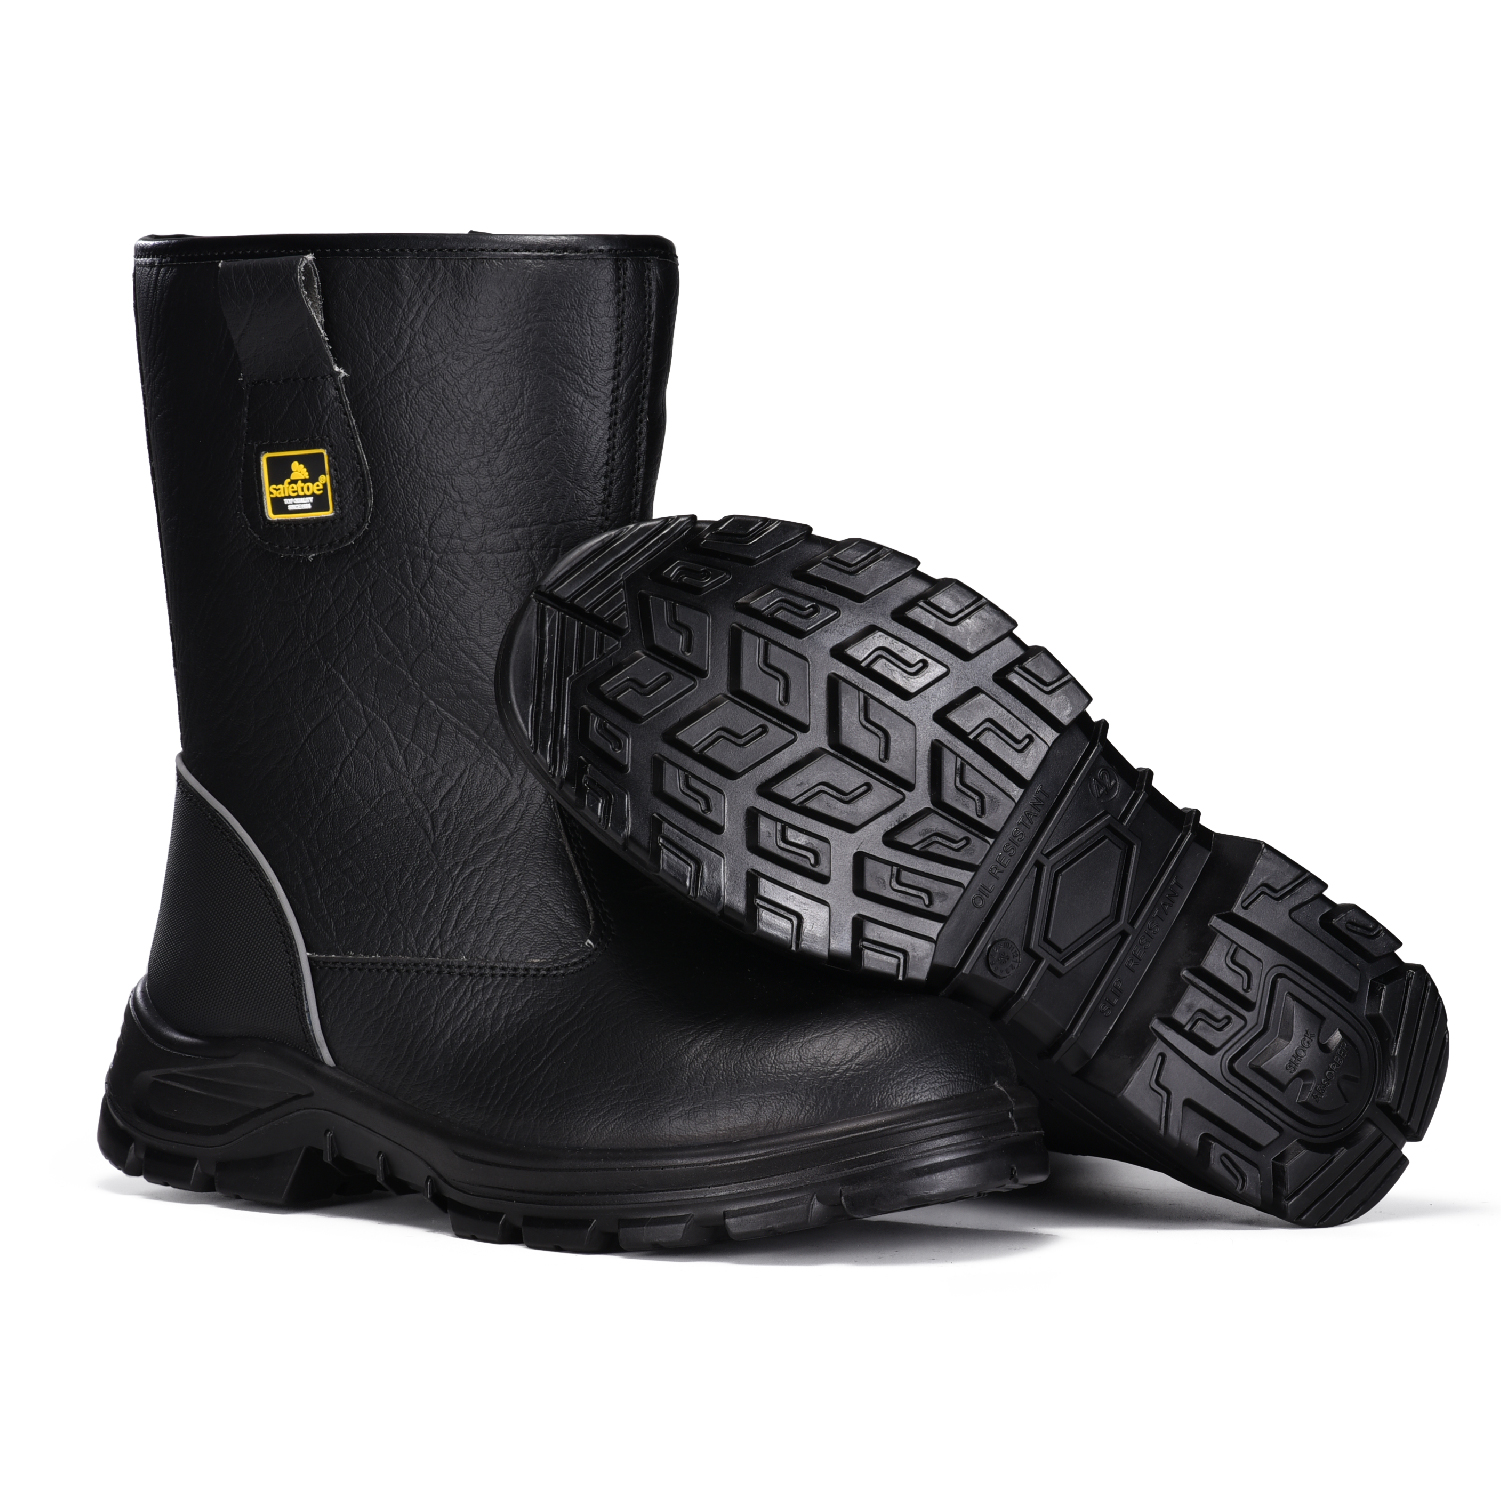 Мужские ботинки для промышленности и строительства со стальным носком для строительных работ H-9430 Черные